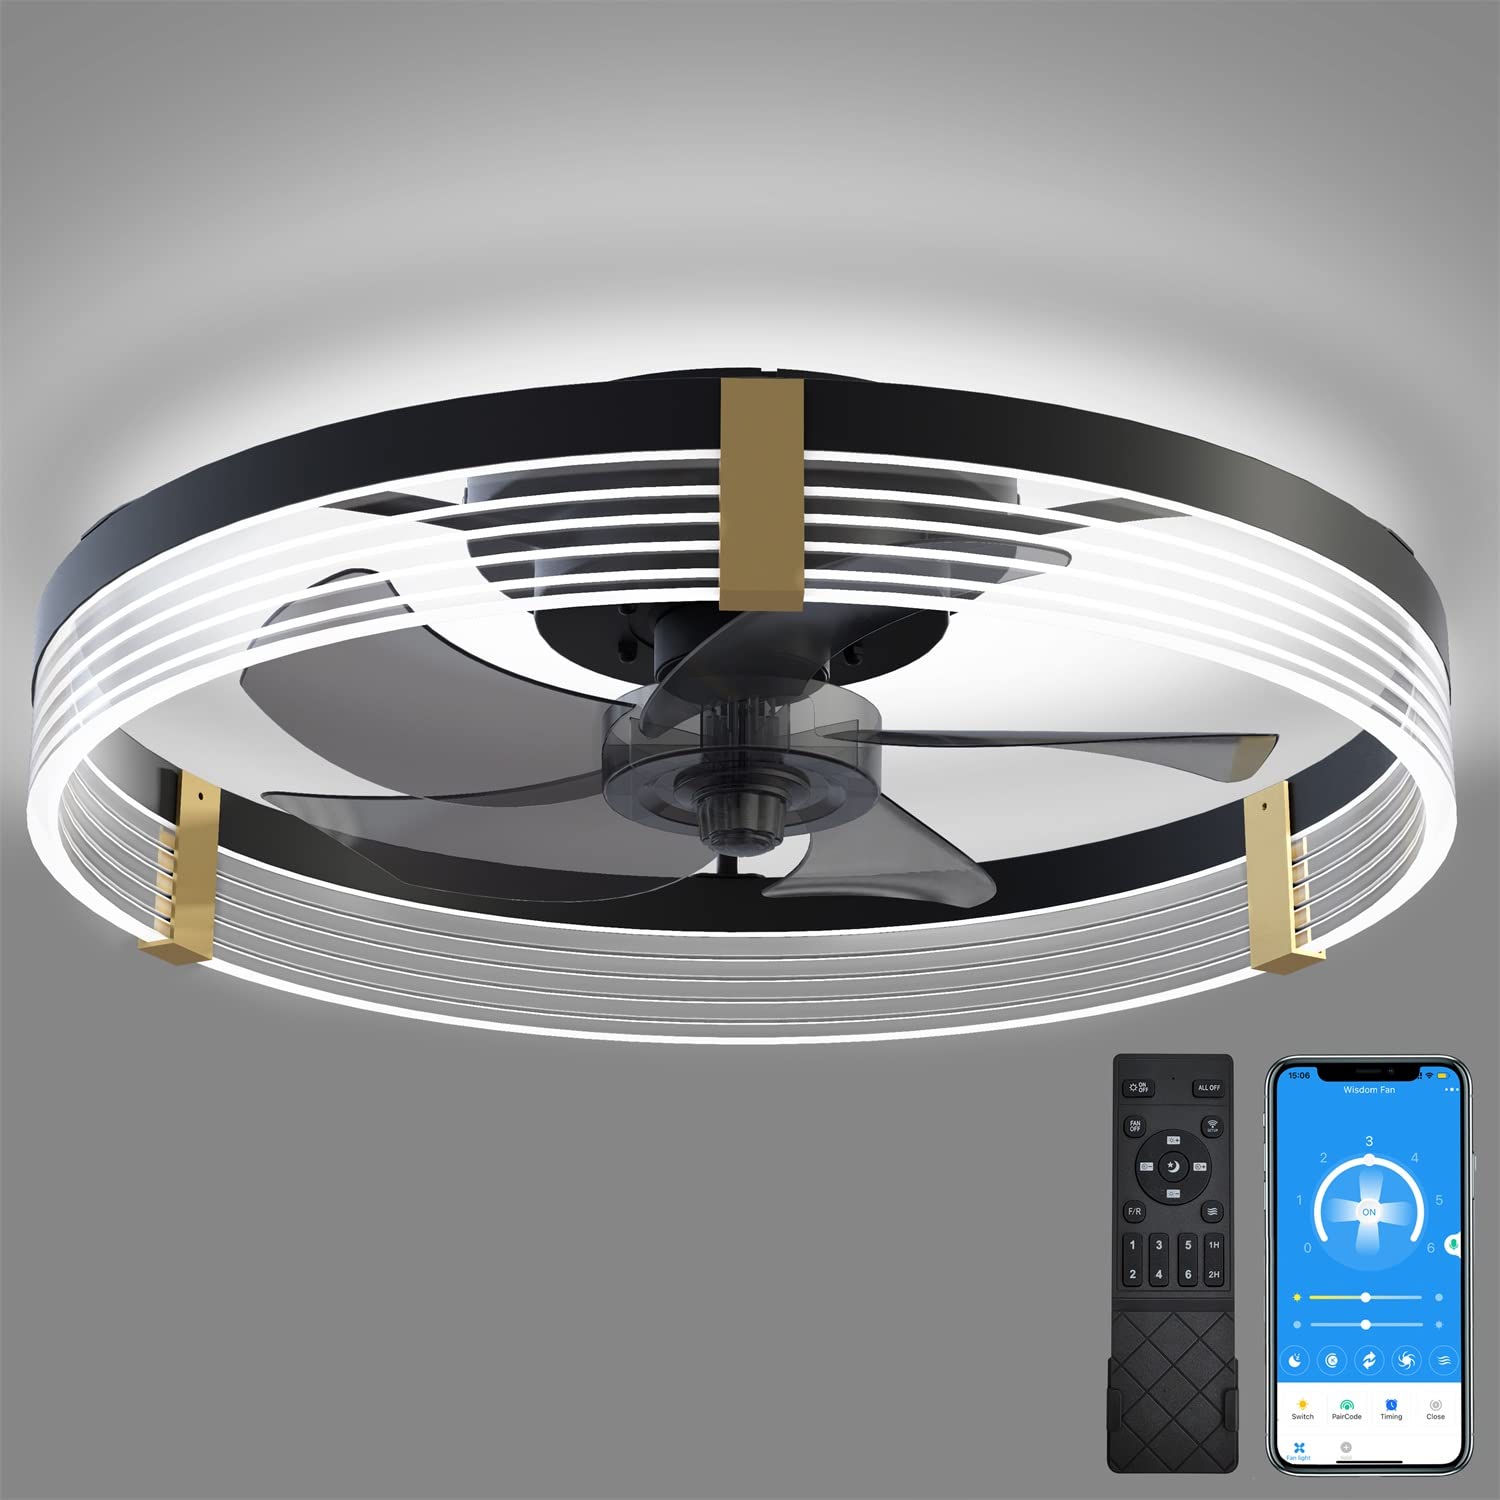 GOSONKT Low Profile Ceiling Fan with Lights